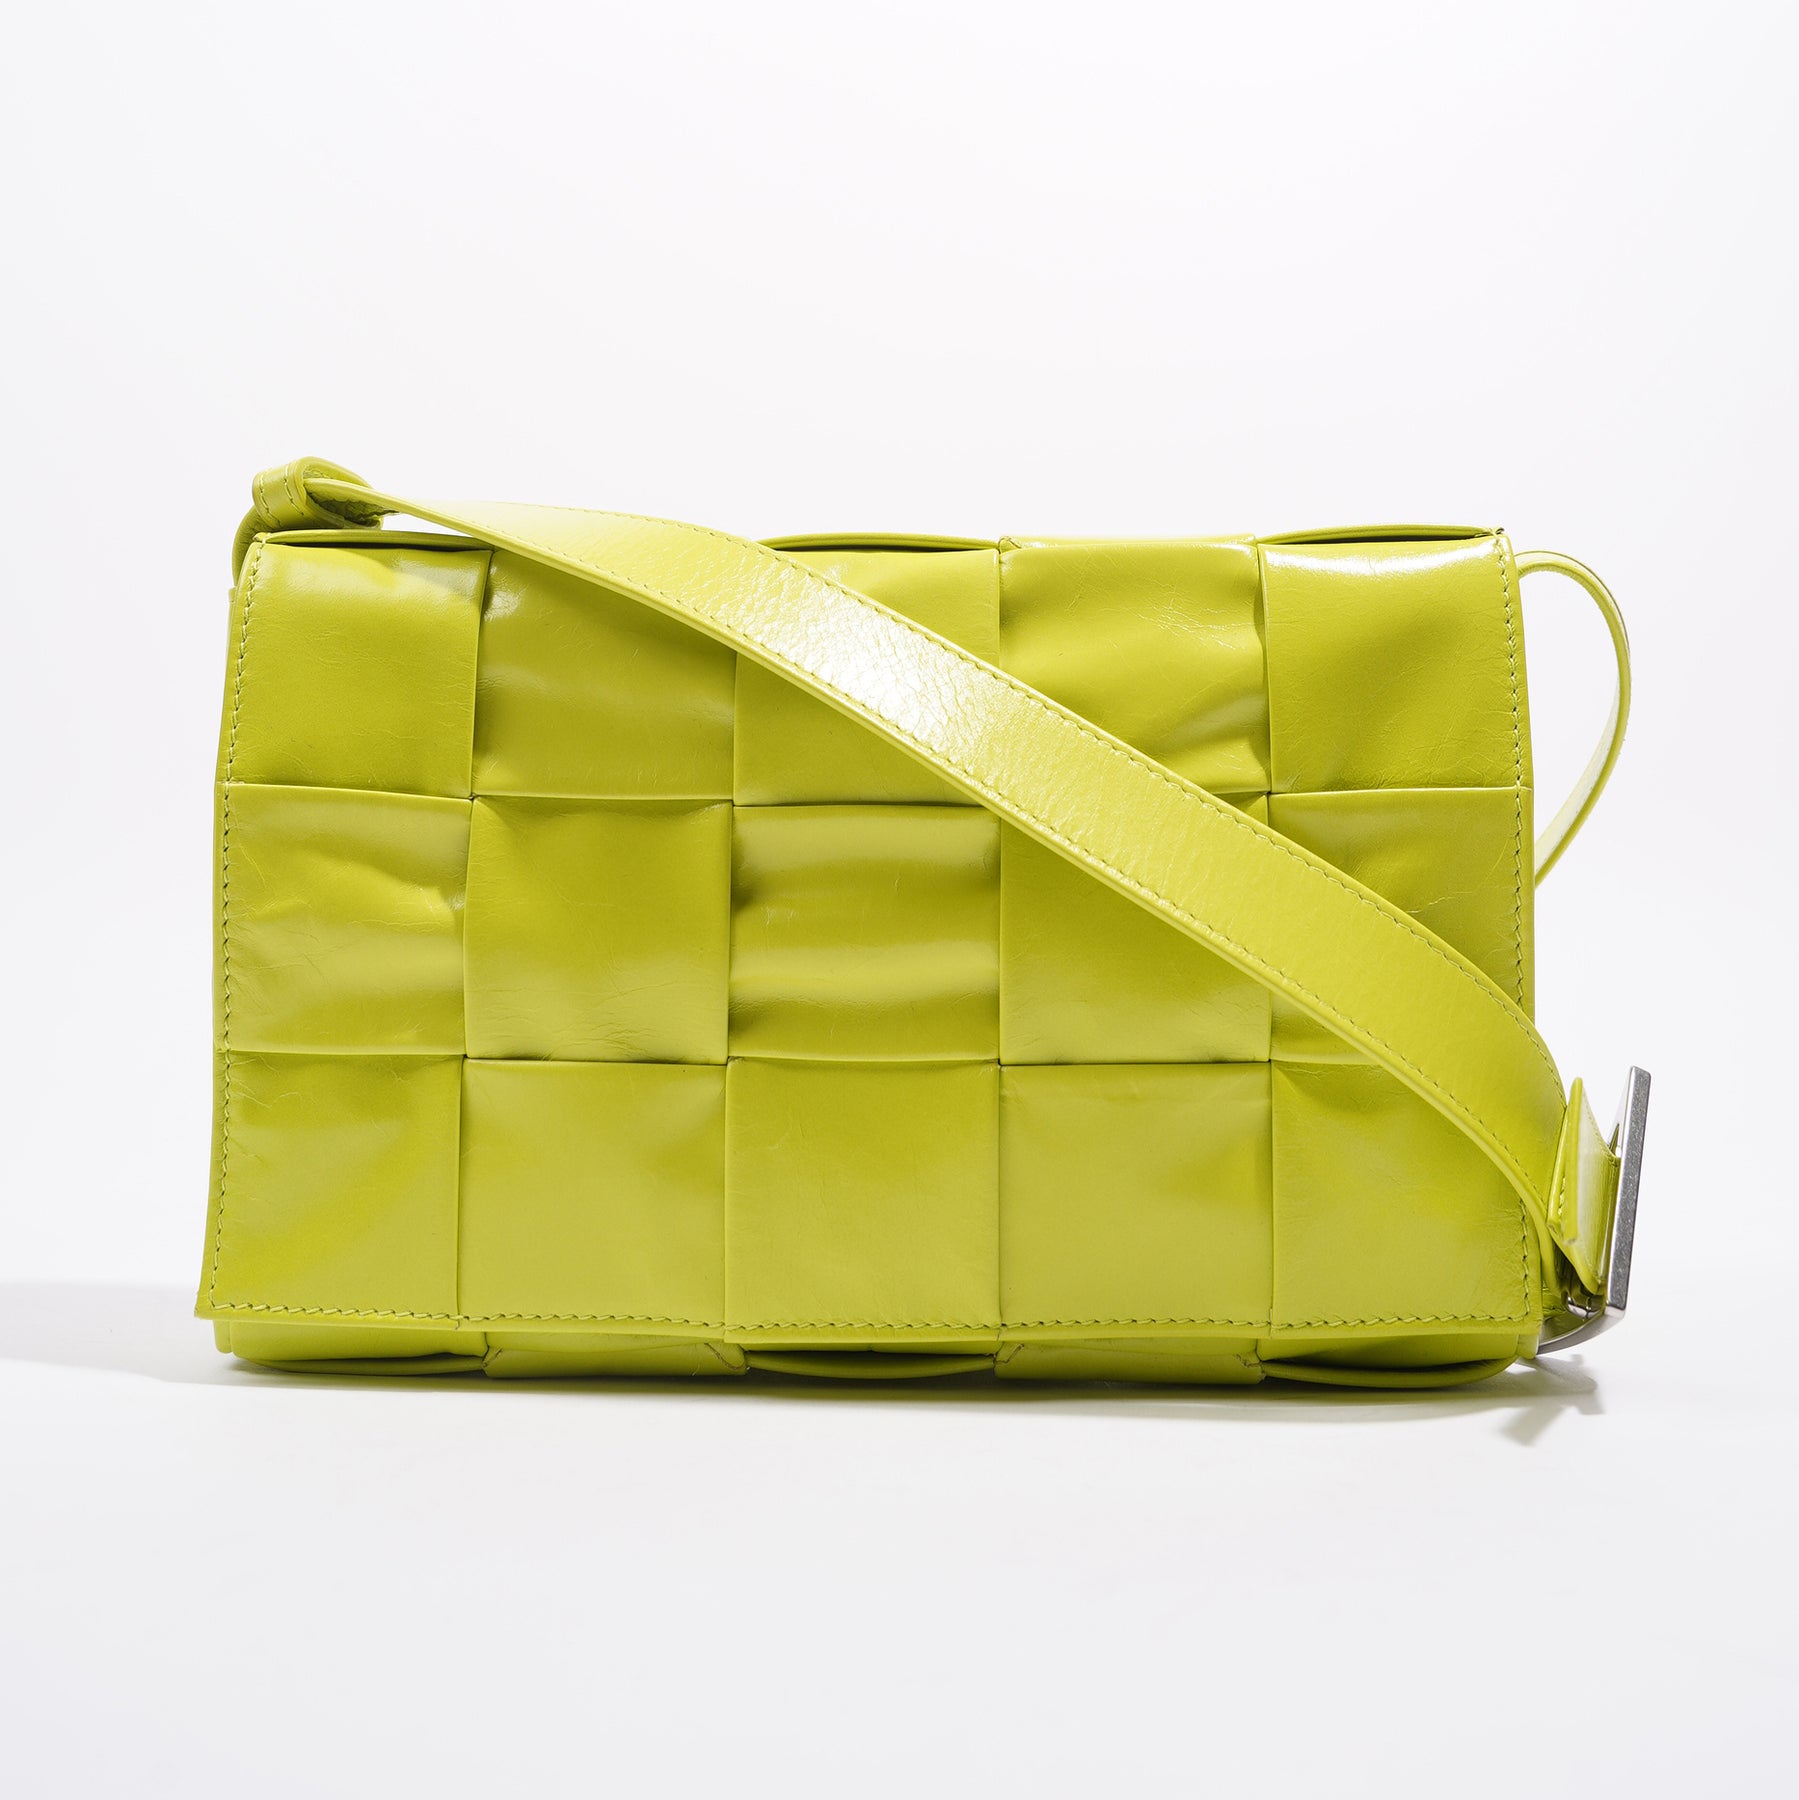 Bottega Veneta Cassette Neon Green Leather Shoulder Bag